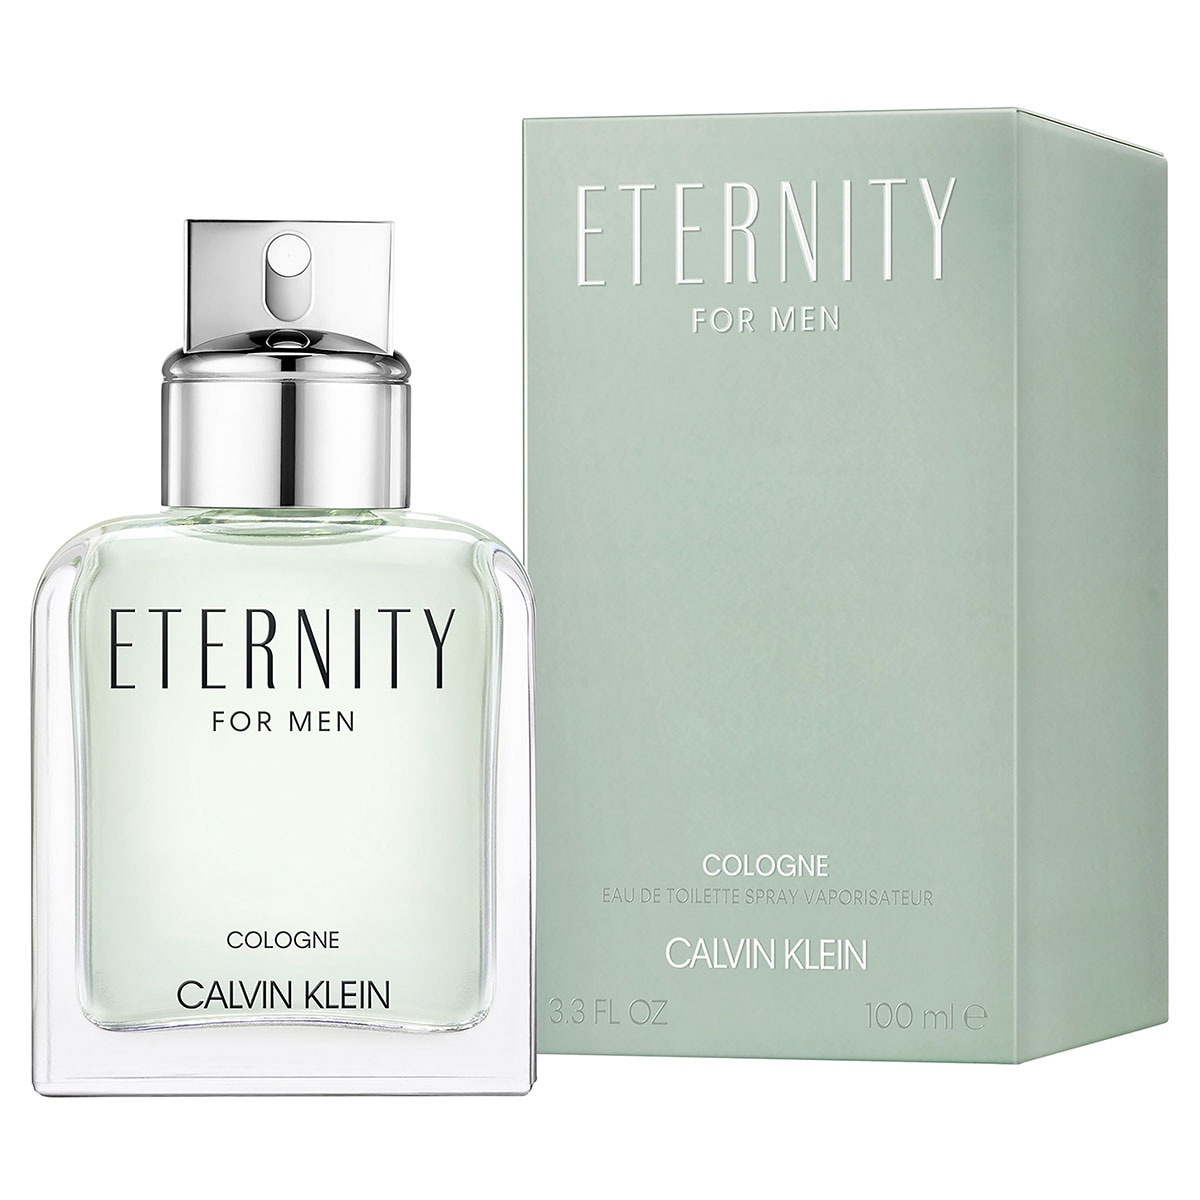 Calvin Klein Eternity for Men Cologne Eau de Toilette 100ml